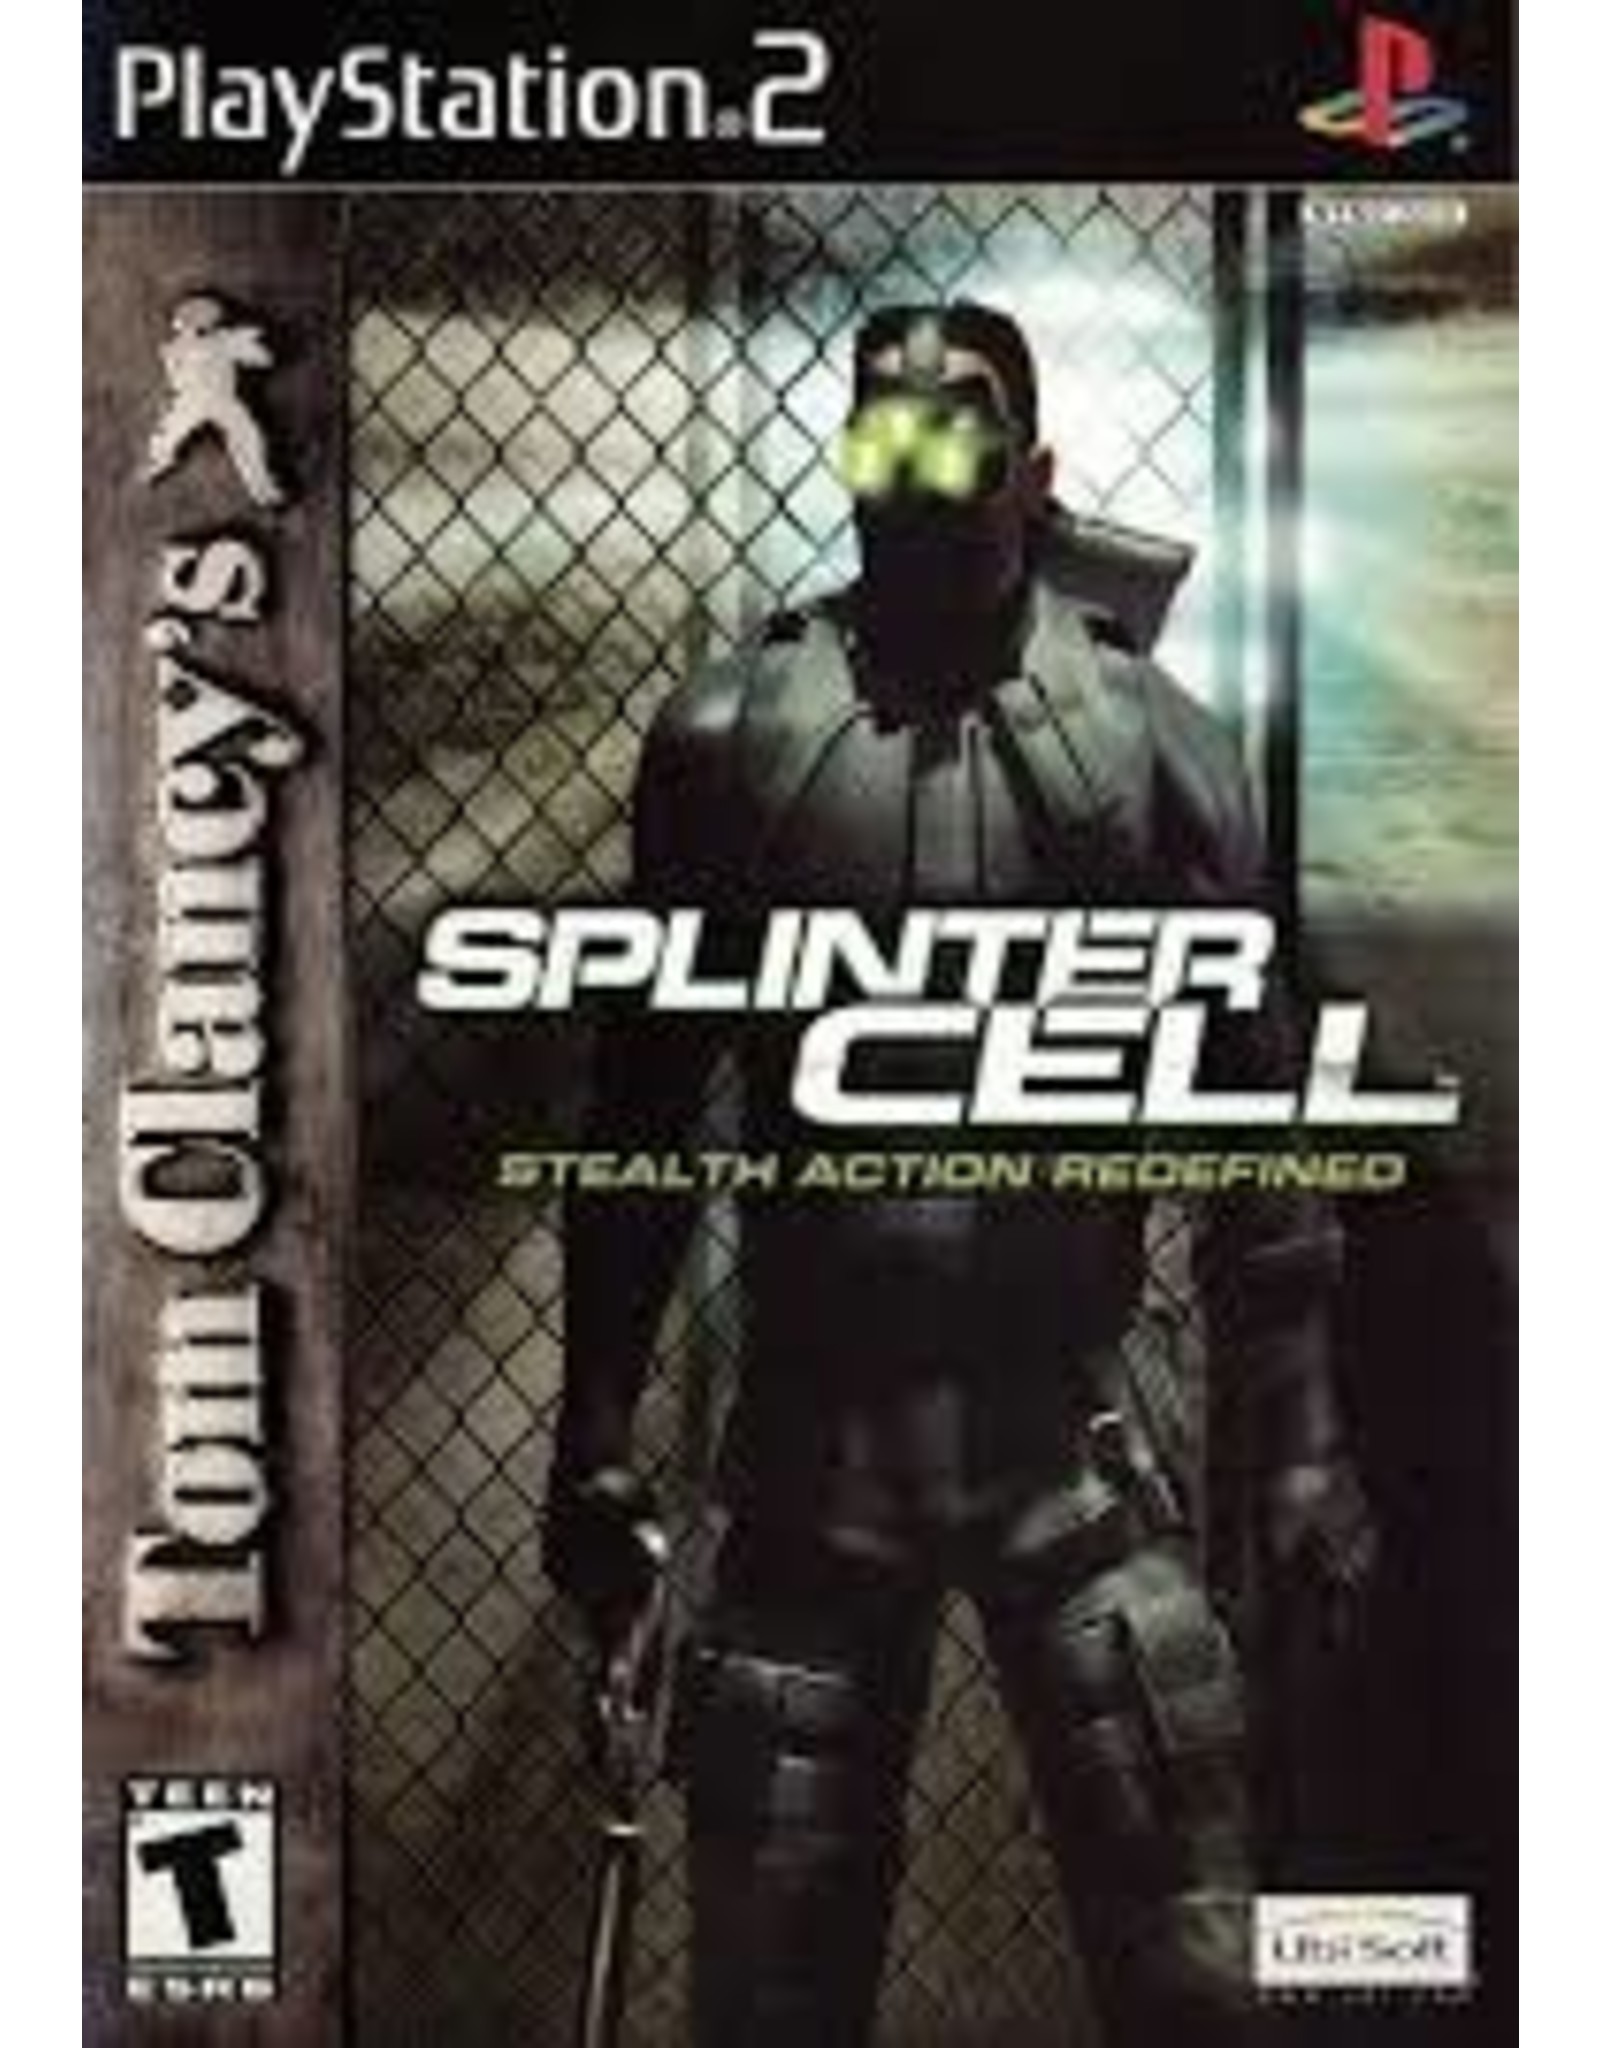 Playstation 2 Splinter Cell (CiB, Water Damaged Sleeve)